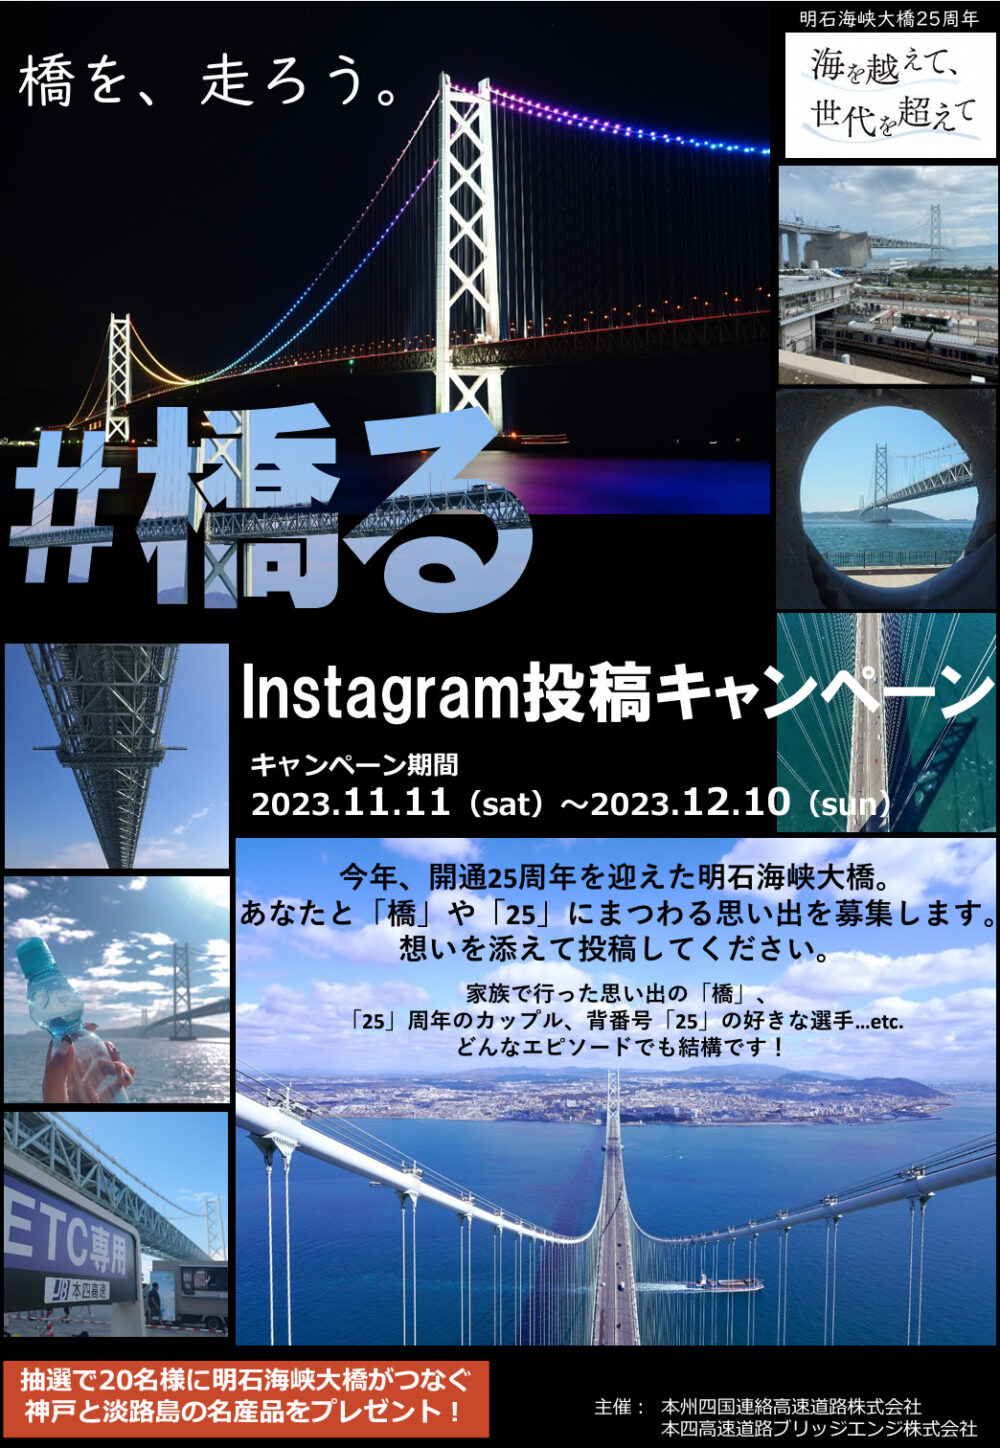 明石海峡大橋 #橋る Instagram キャンペーン